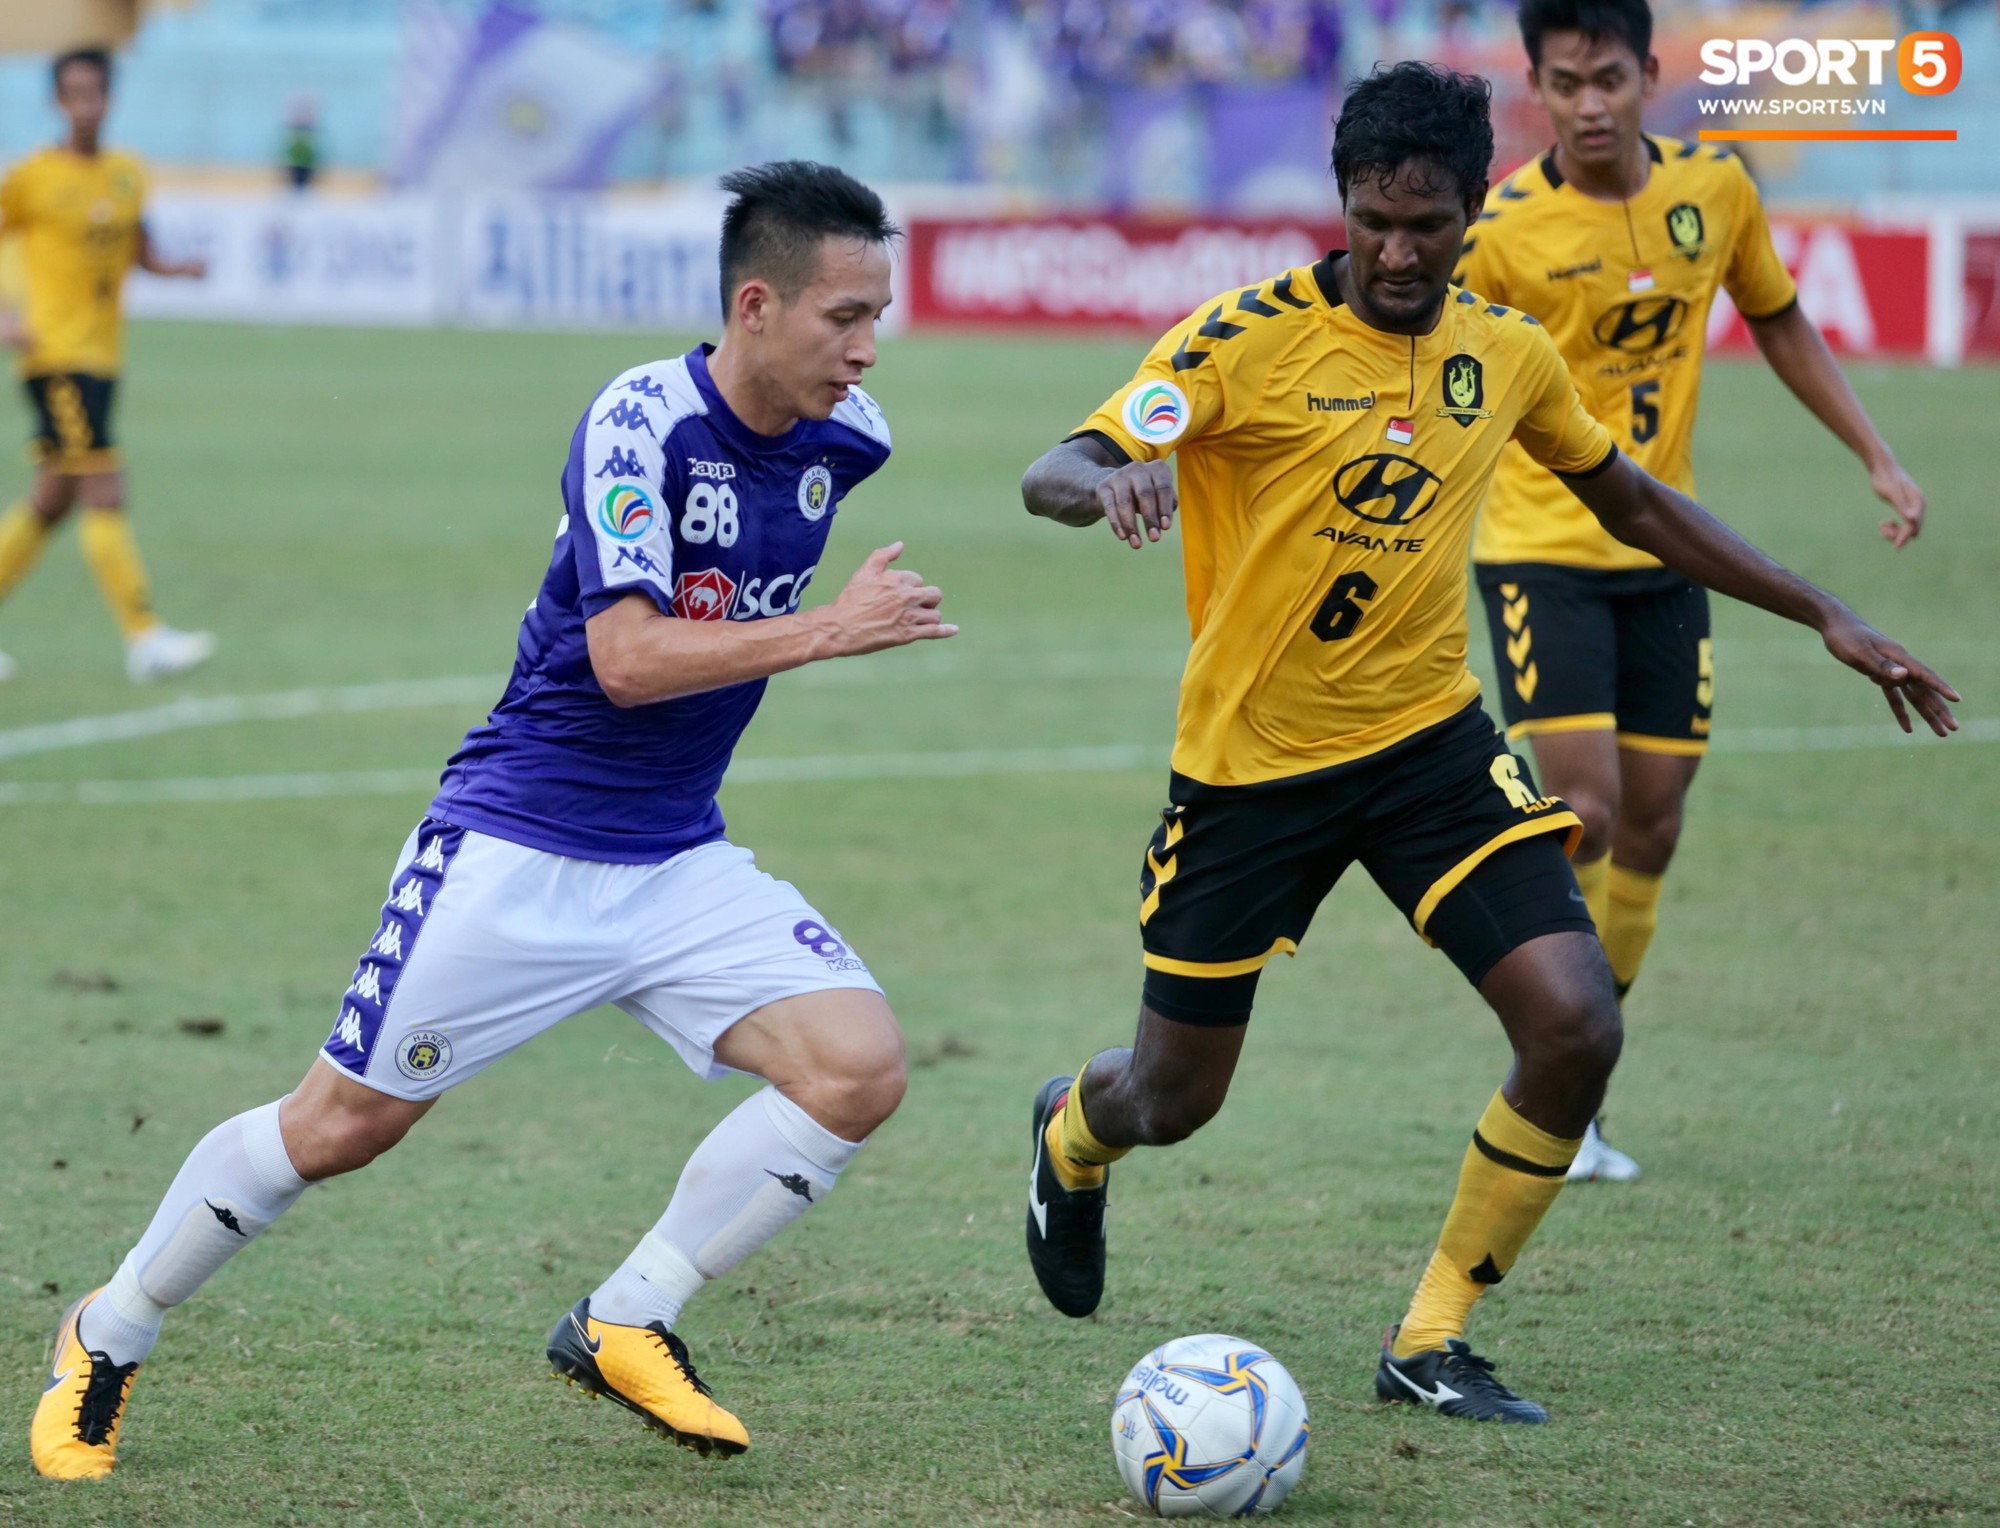 HLV Hà Nội FC mong muốn được BTC V.League tạo điều kiện để tập trung tiến sâu tại AFC Cup - Ảnh 1.